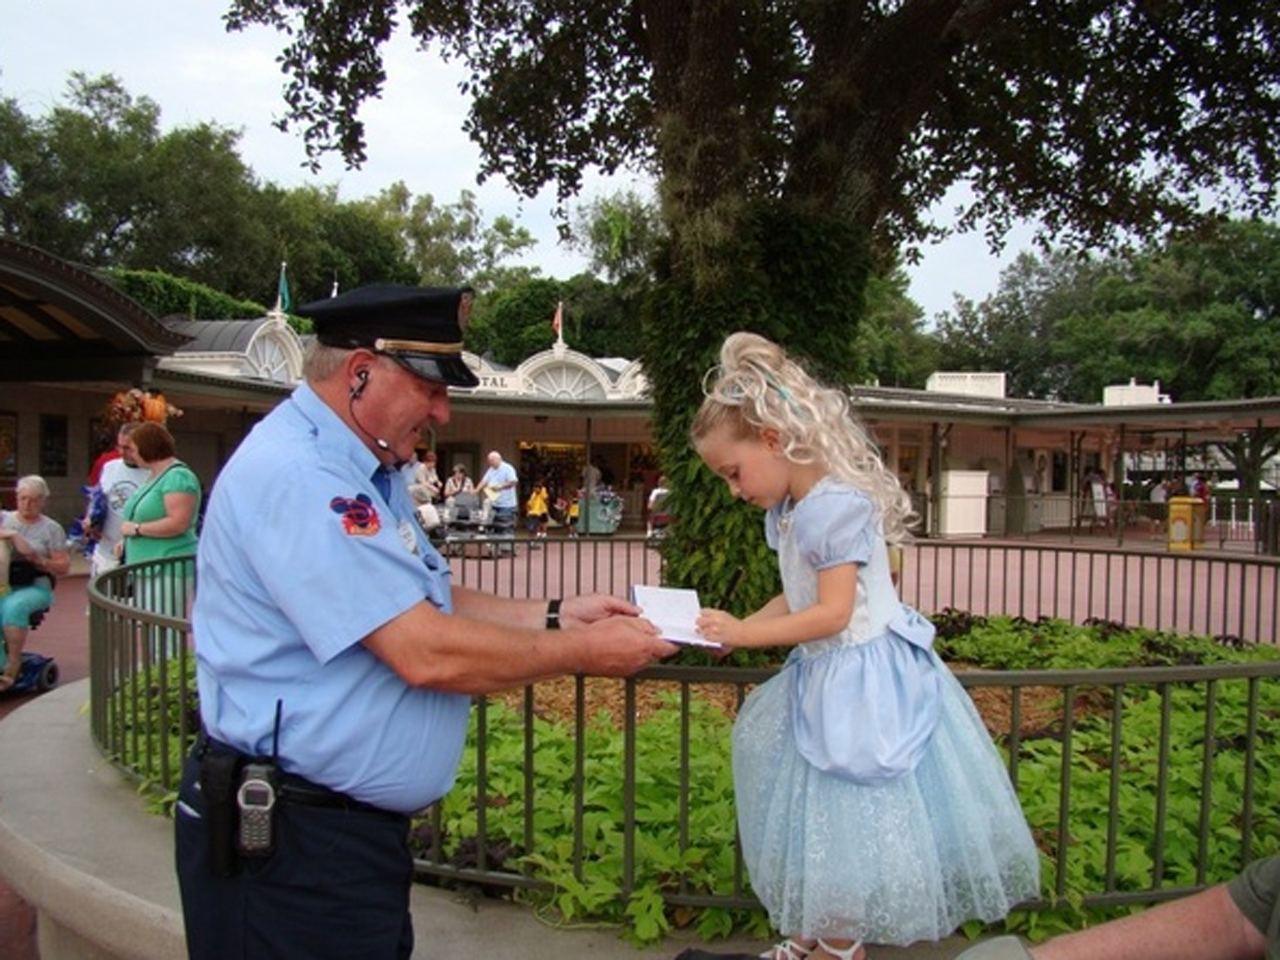 Kolik vydělávají strážci Disney World Bezpečnostní stráže?